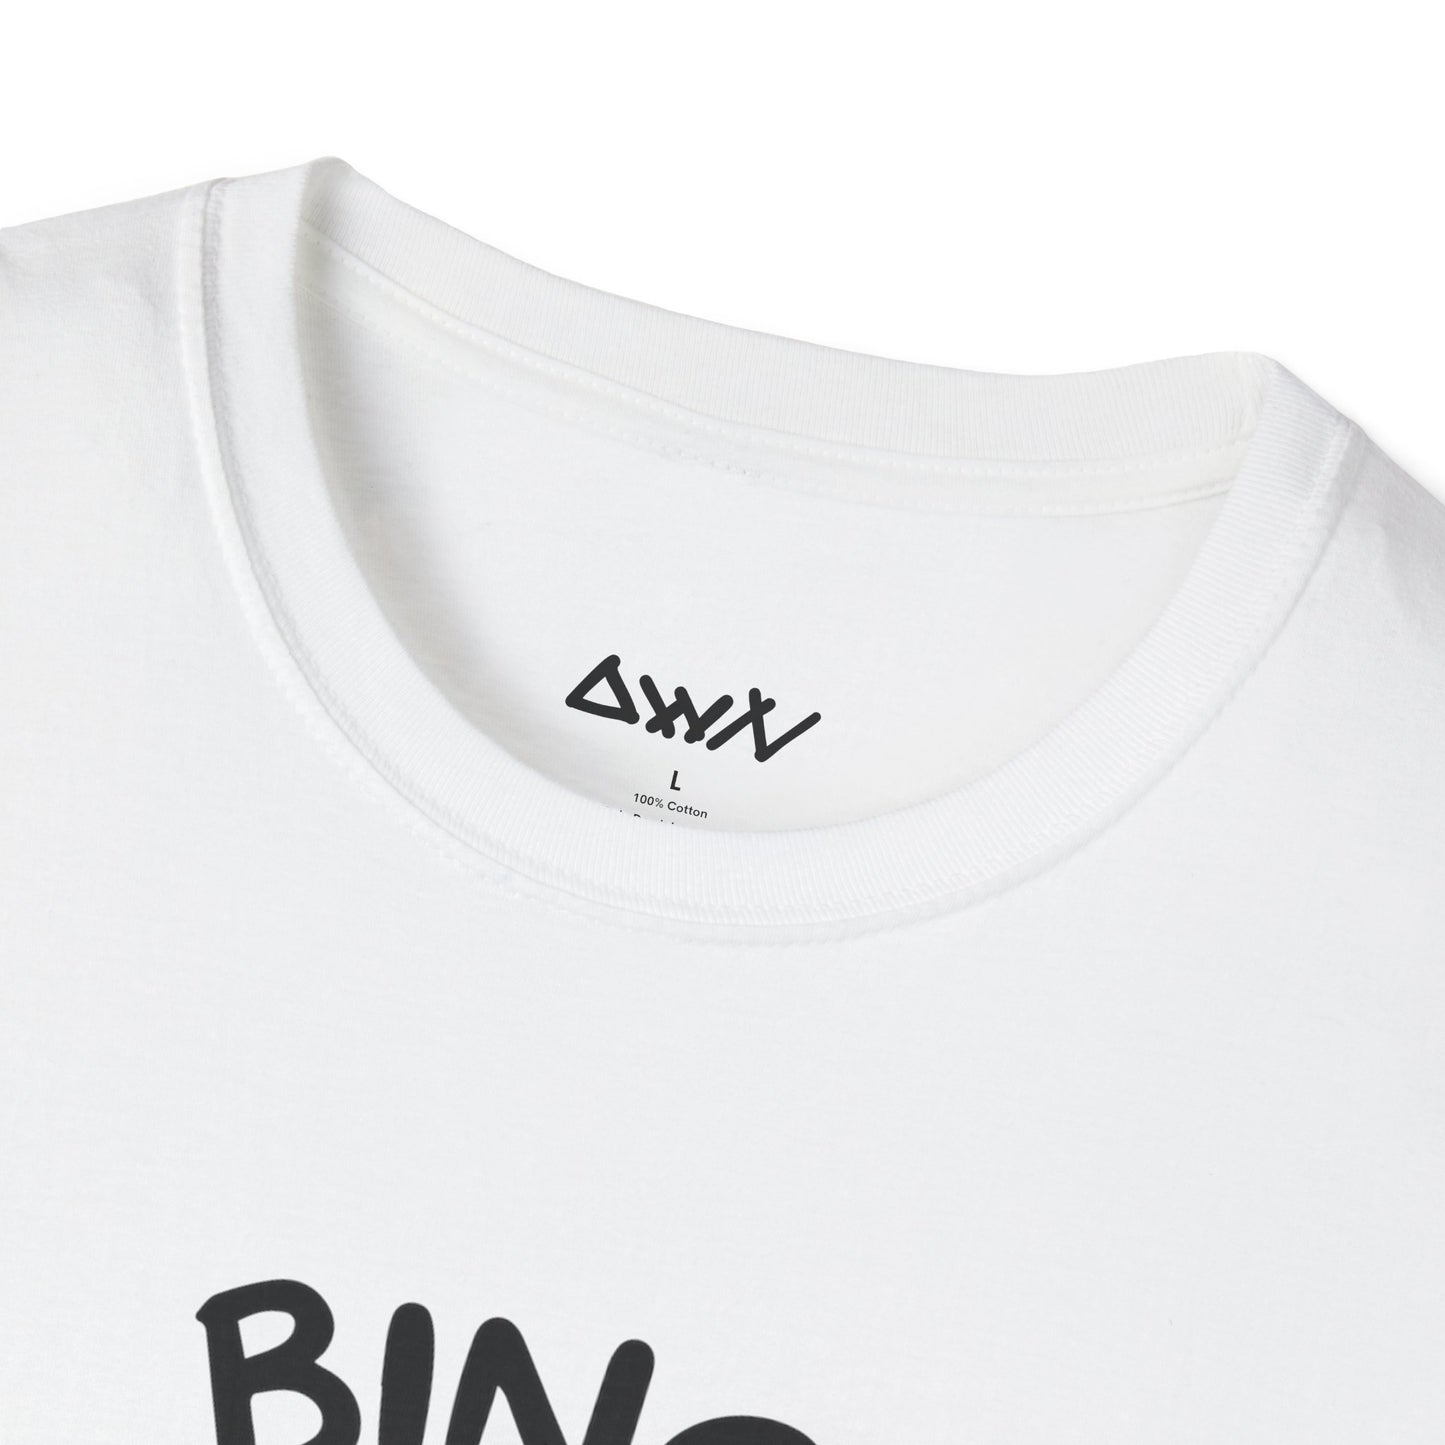 Bing Chilling T-Shirt - DwnReverie